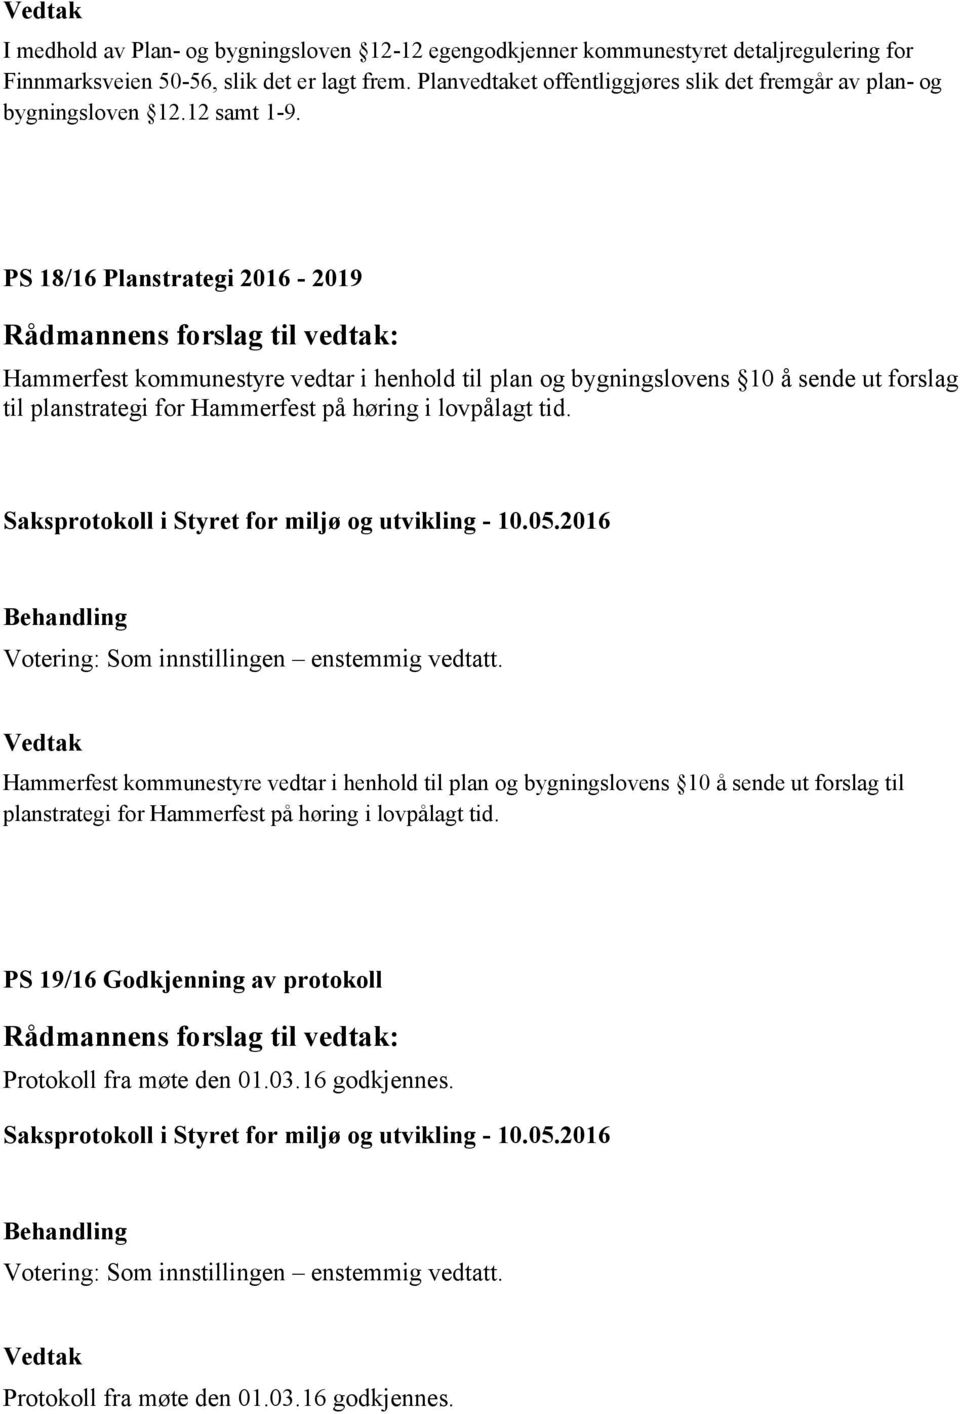 PS 18/16 Planstrategi 2016-2019 Hammerfest kommunestyre vedtar i henhold til plan og bygningslovens 10 å sende ut forslag til planstrategi for Hammerfest på høring i